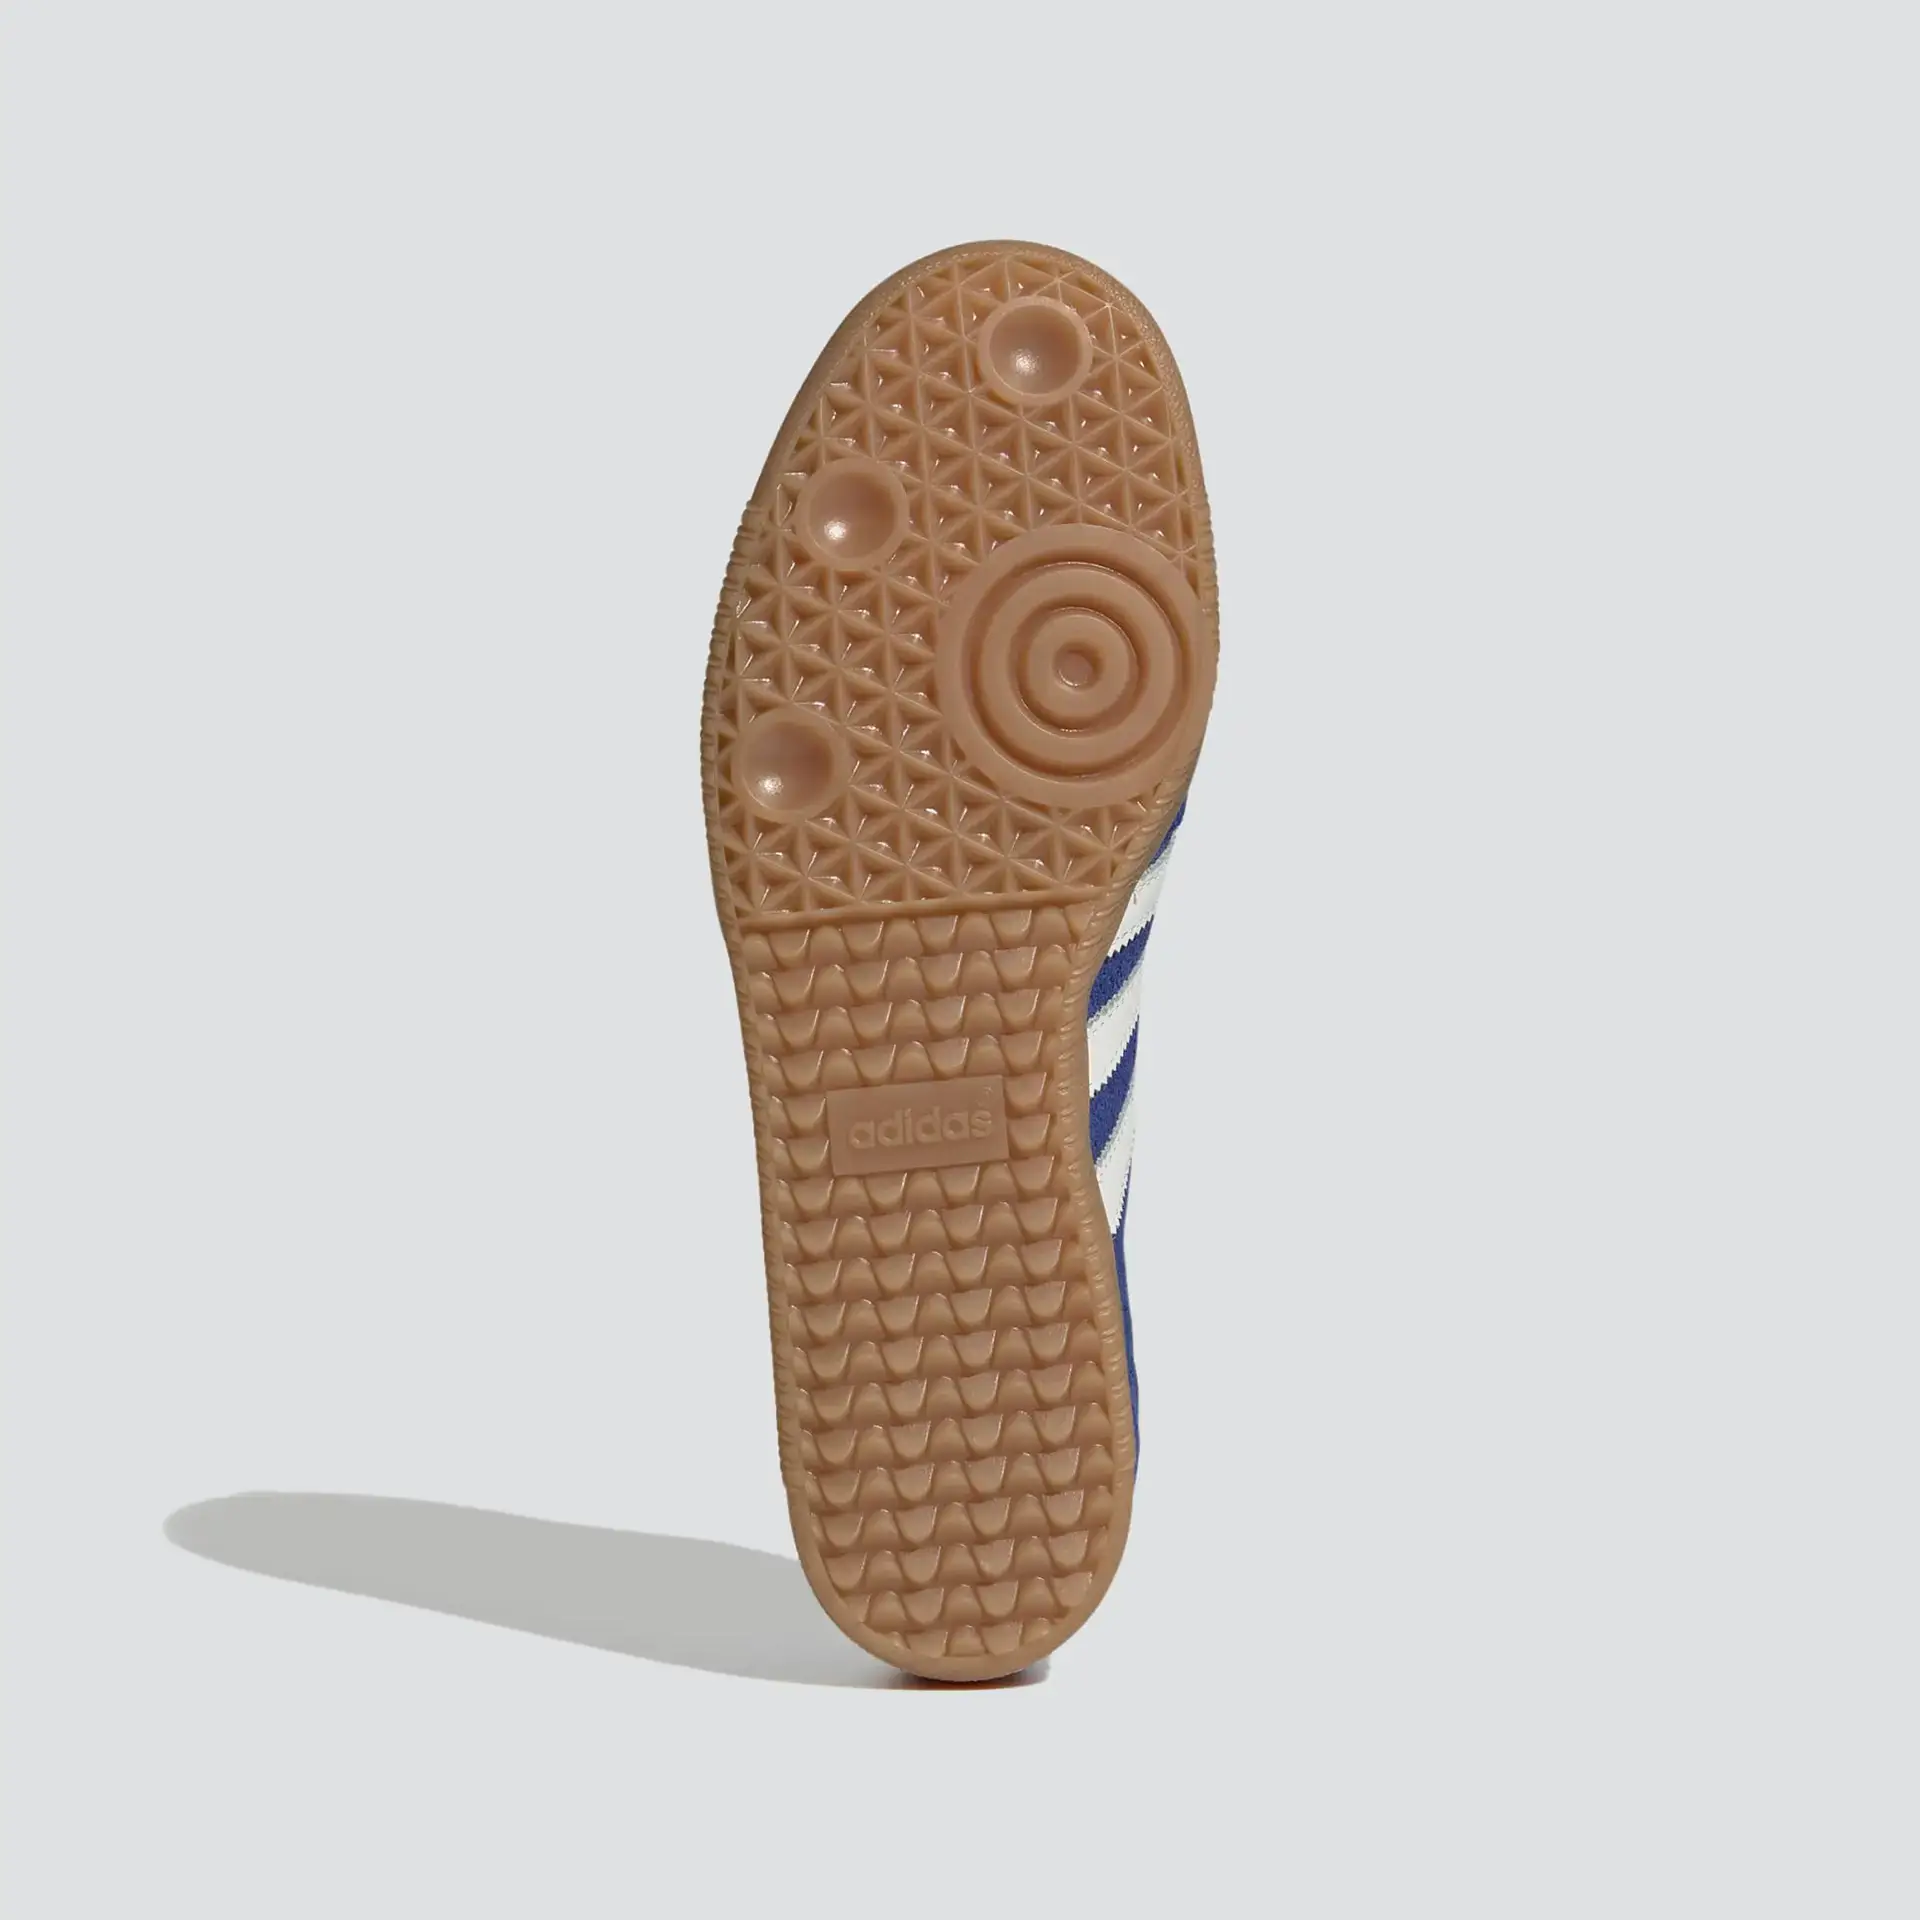 Adidas Sneaker Samba OG Royal Blue/Core White/Gum